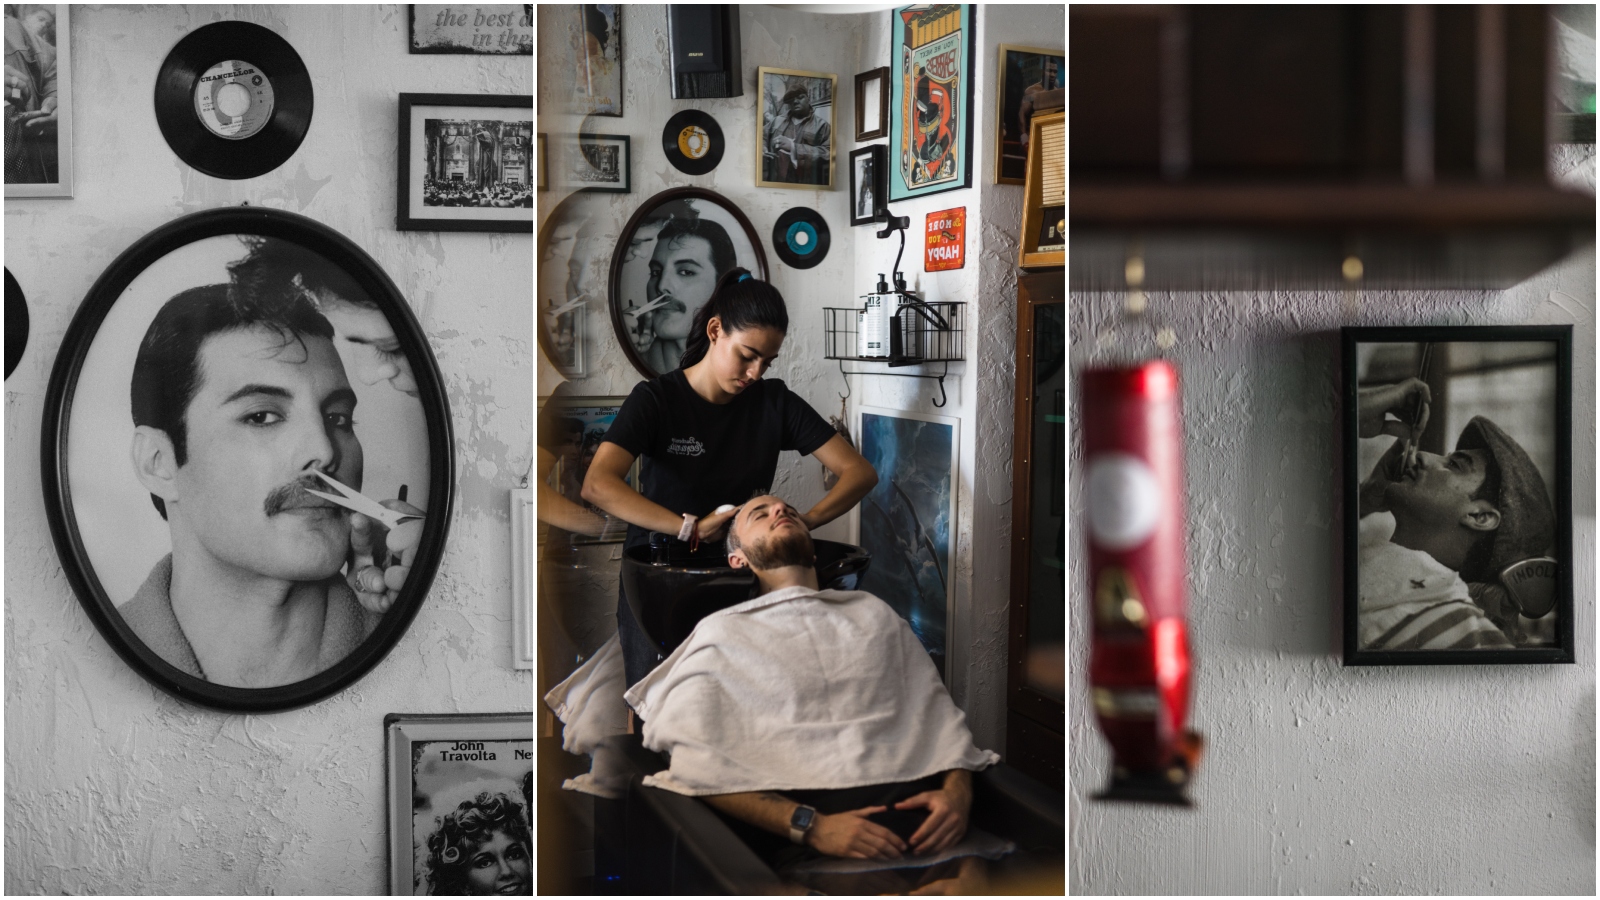 Vodimo vas u Leekariju, splitsku brijačnicu čiji interijer odiše retro vibrom